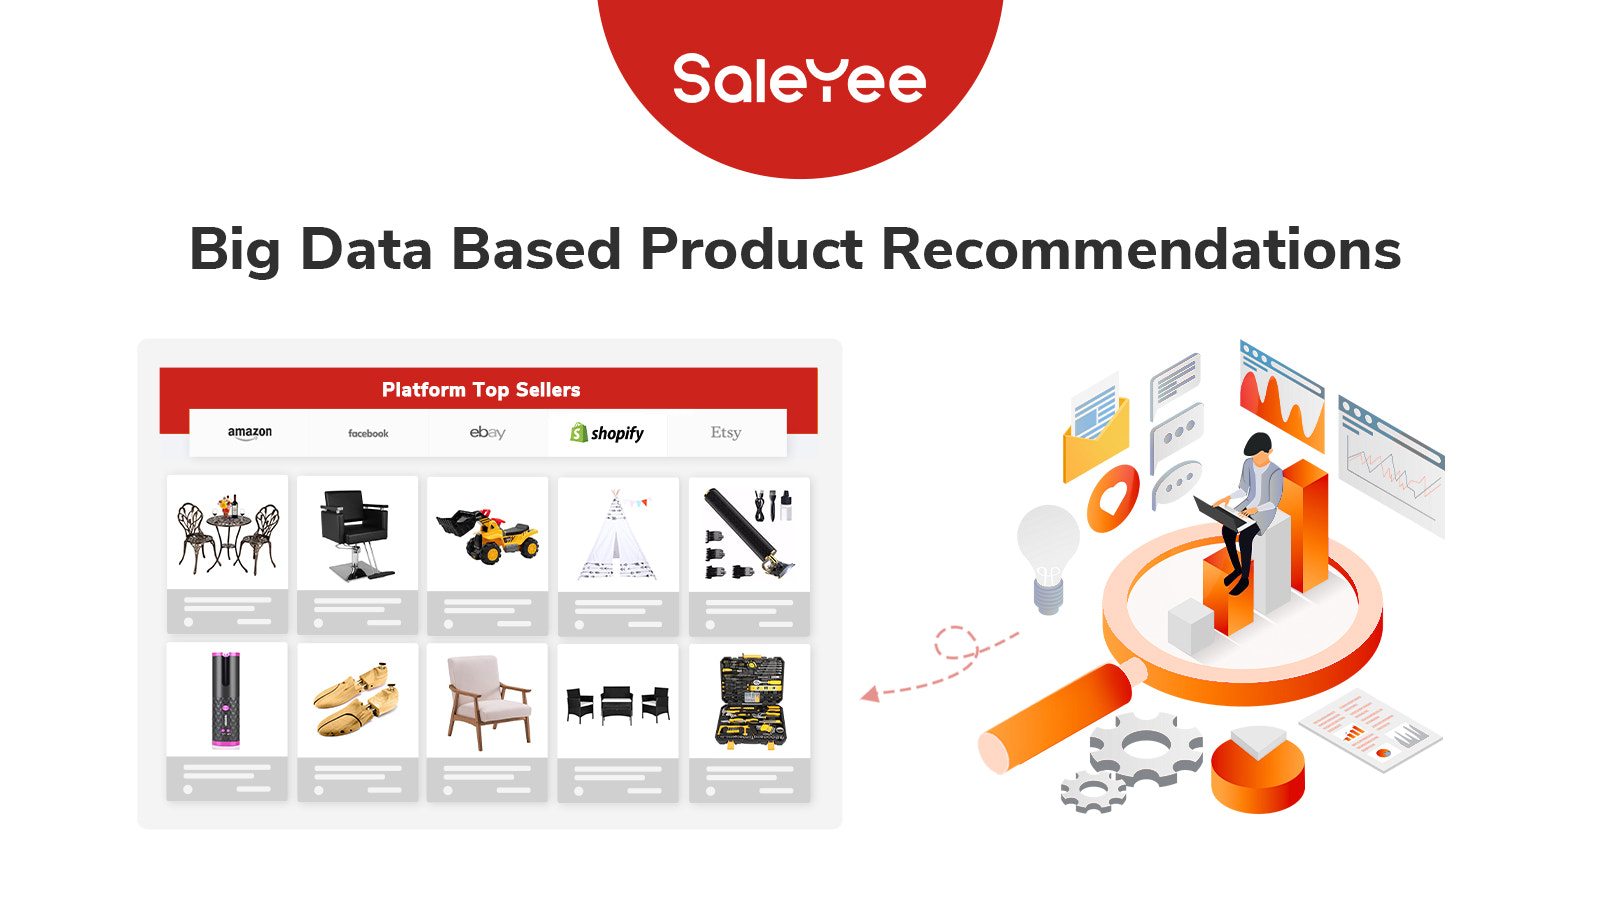 saleyee-groot-data-gebaseerde-productaanbevelingen